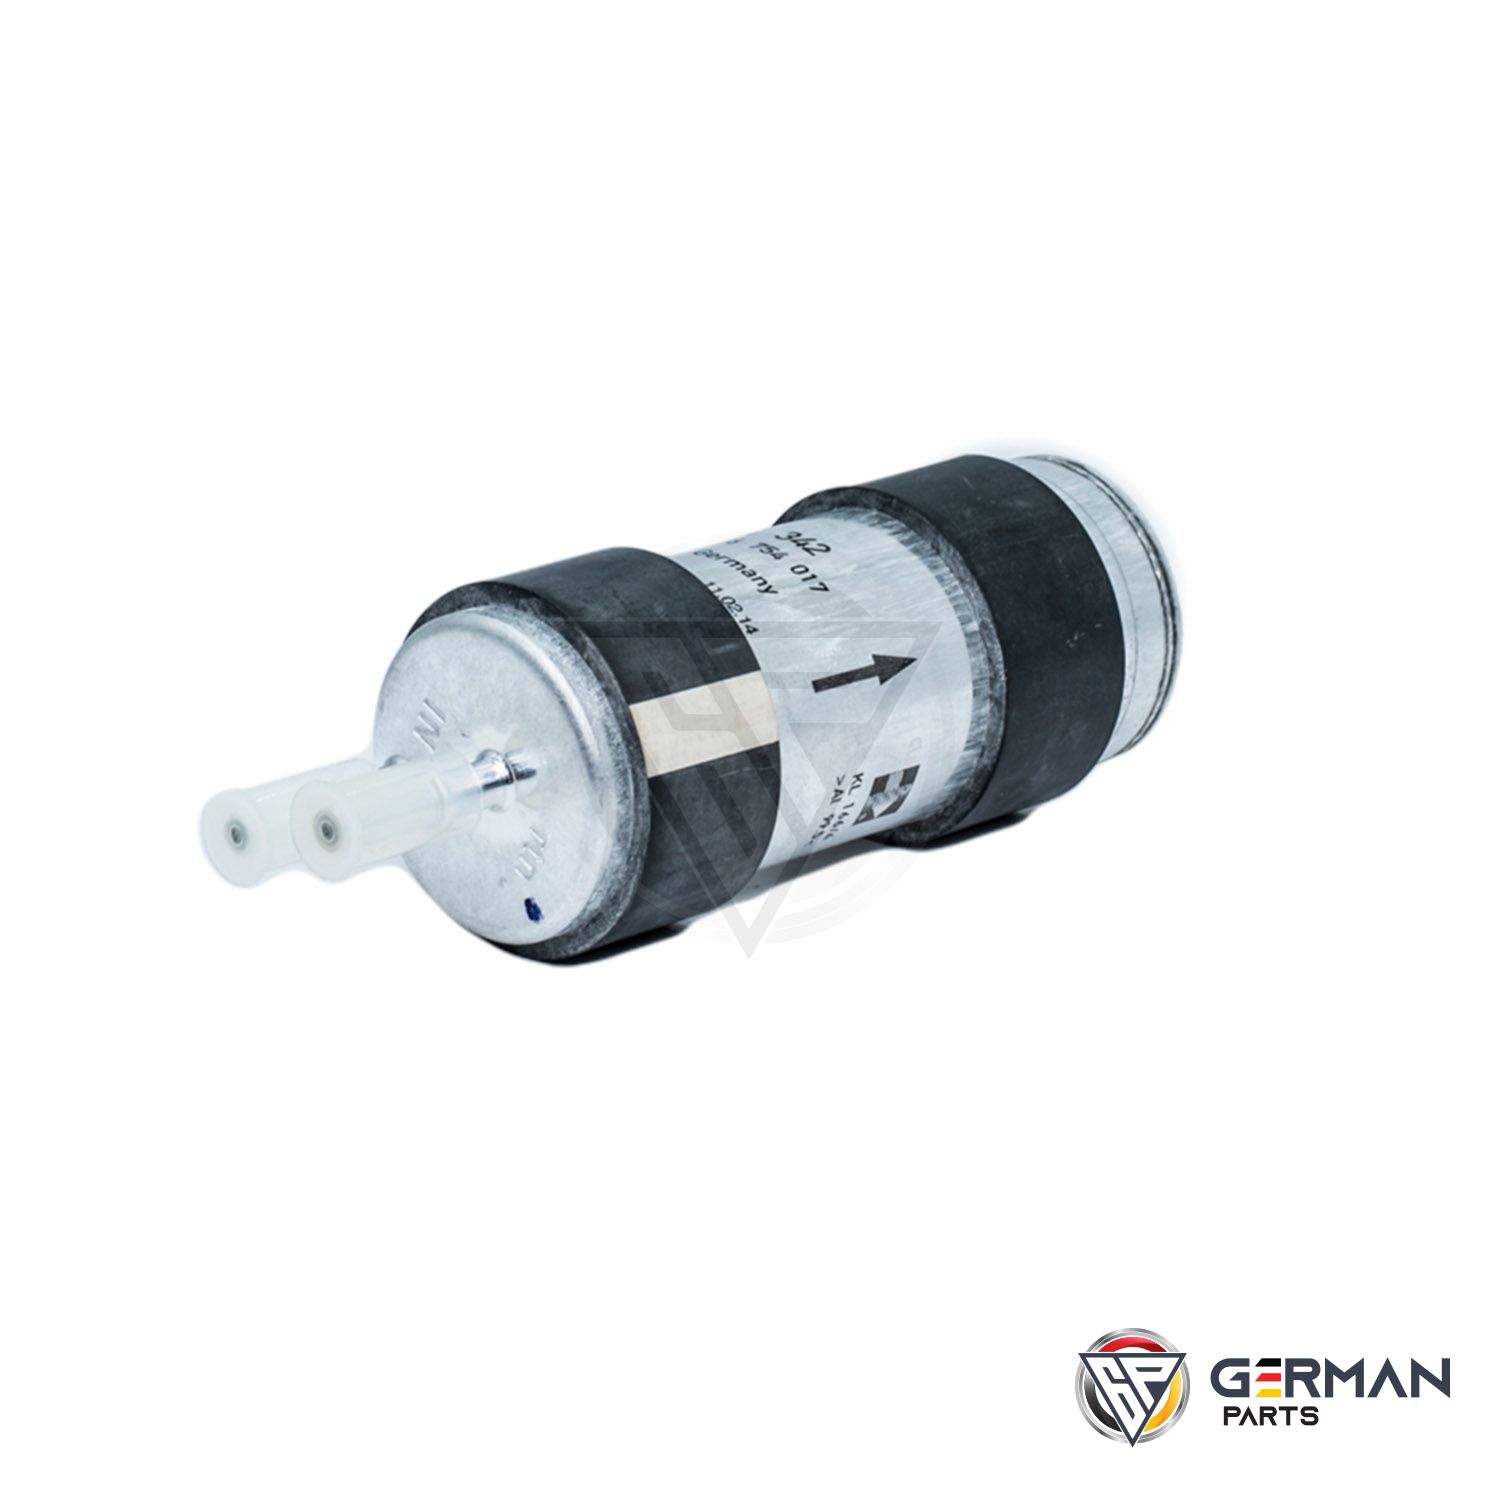 Buy BMW Fuel Filter 16127236941 - German Parts